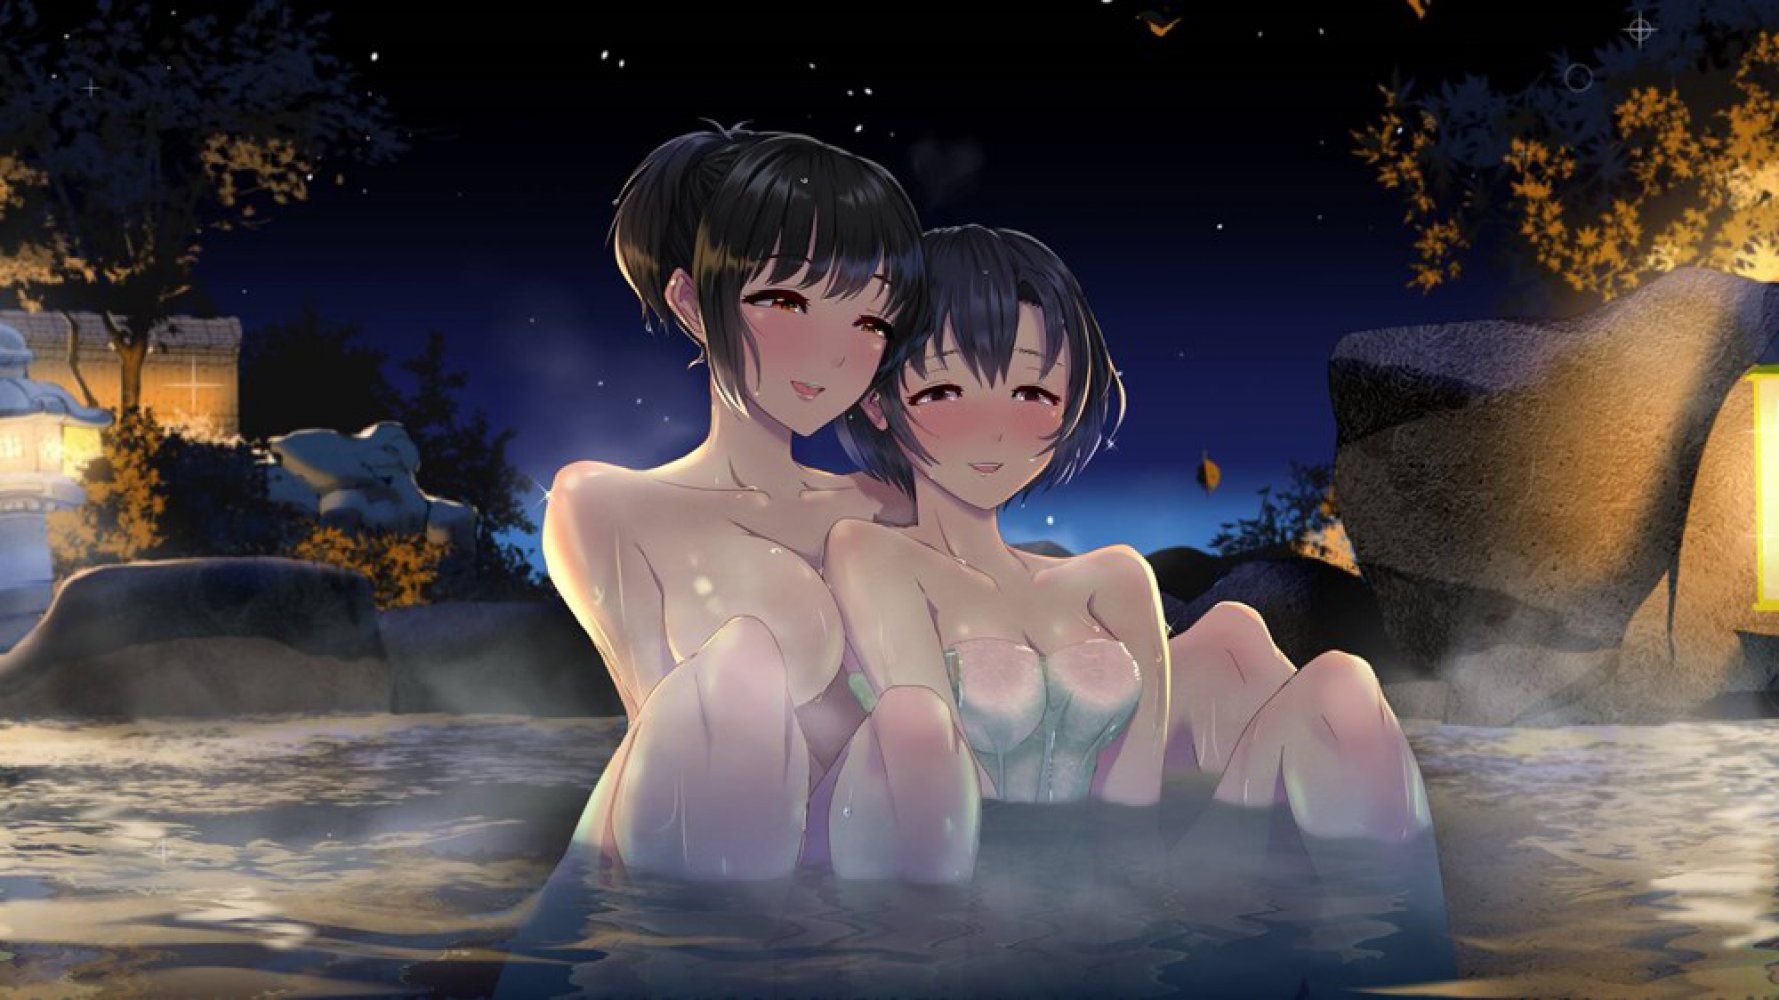 【Secondary】Bath/ Bathing Image 【Erotic】 49